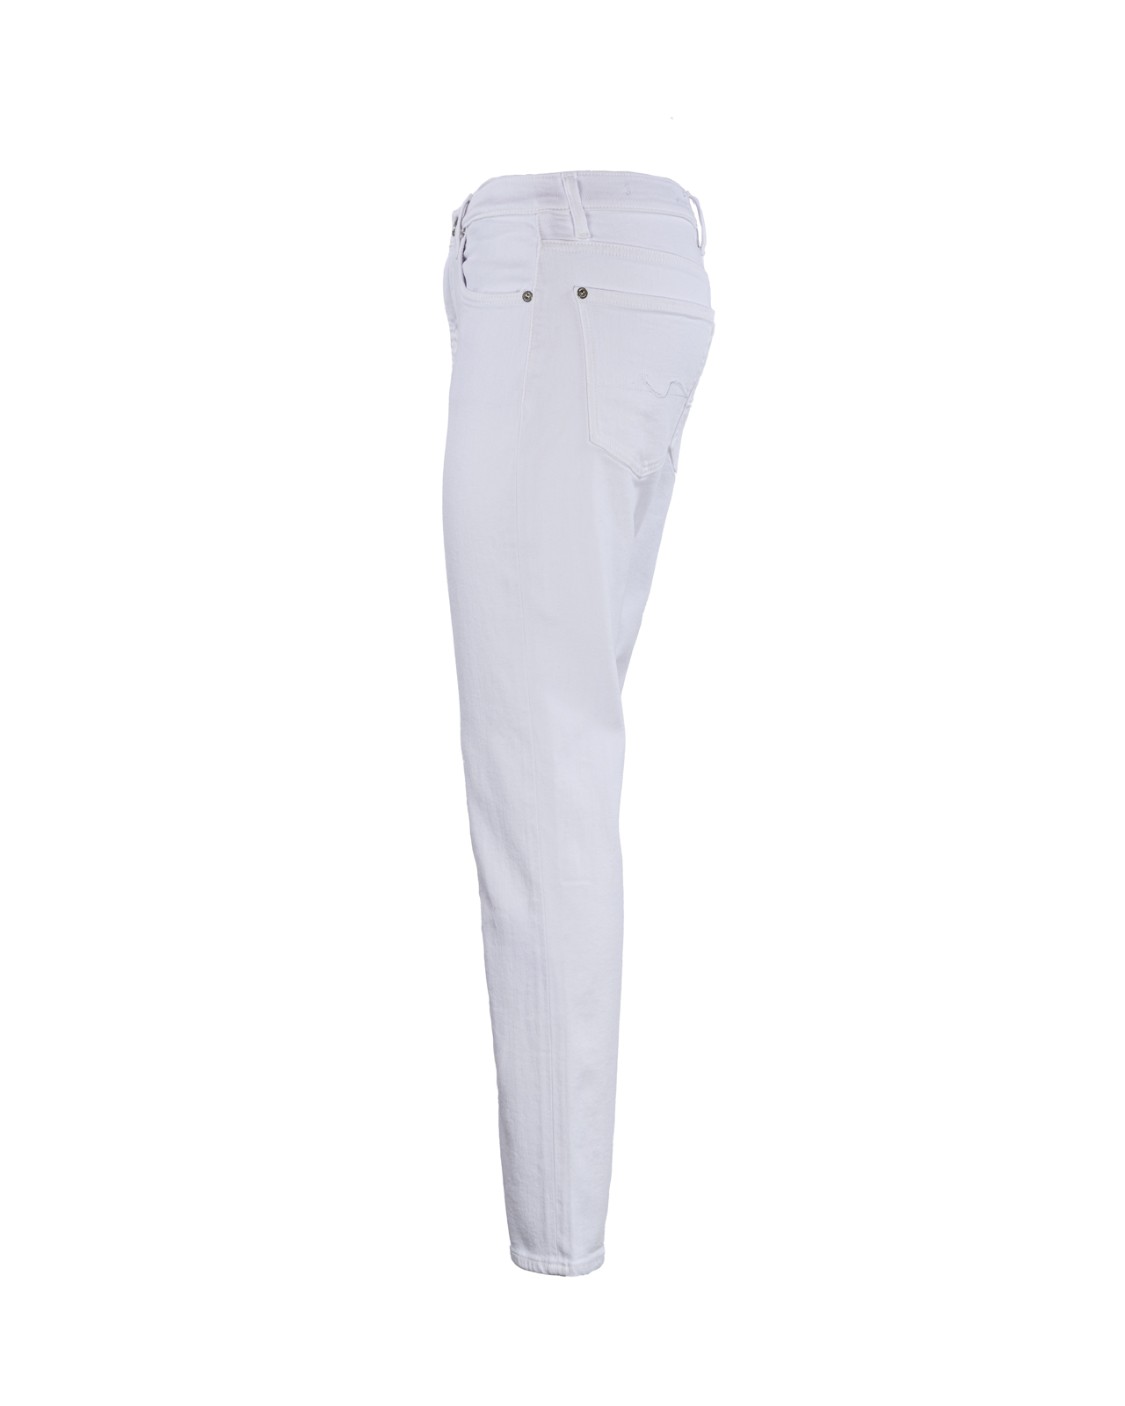 shop SEVEN Saldi Jeans: Seven jeans "Easy Slim".
Vita alta.
Slim.
Tessuto Stretch.
Composizione: Cotone 81% Lyocell 11% Poliestere 6% Elastane 2%.
Fabbricato in Tunisia.. JSELC140WT-WHITE number 811406